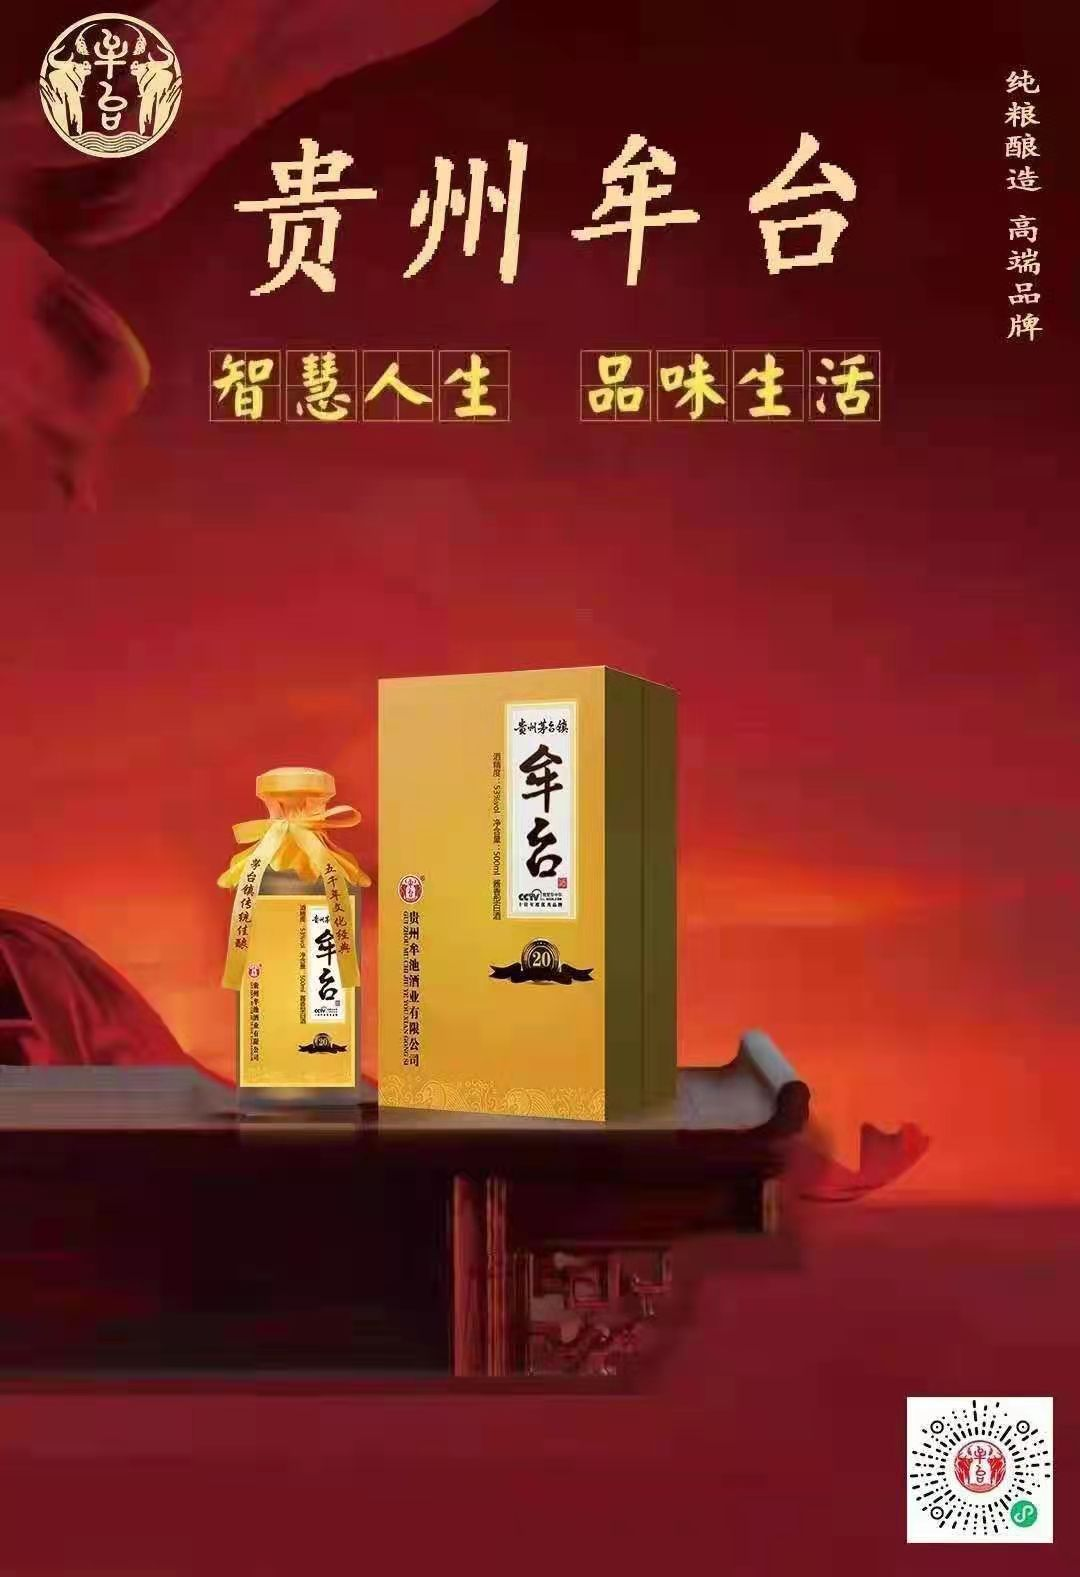 贵州茅台镇著名品牌牟台酒企业歌曲《美酒牟台》隆重问世(图4)